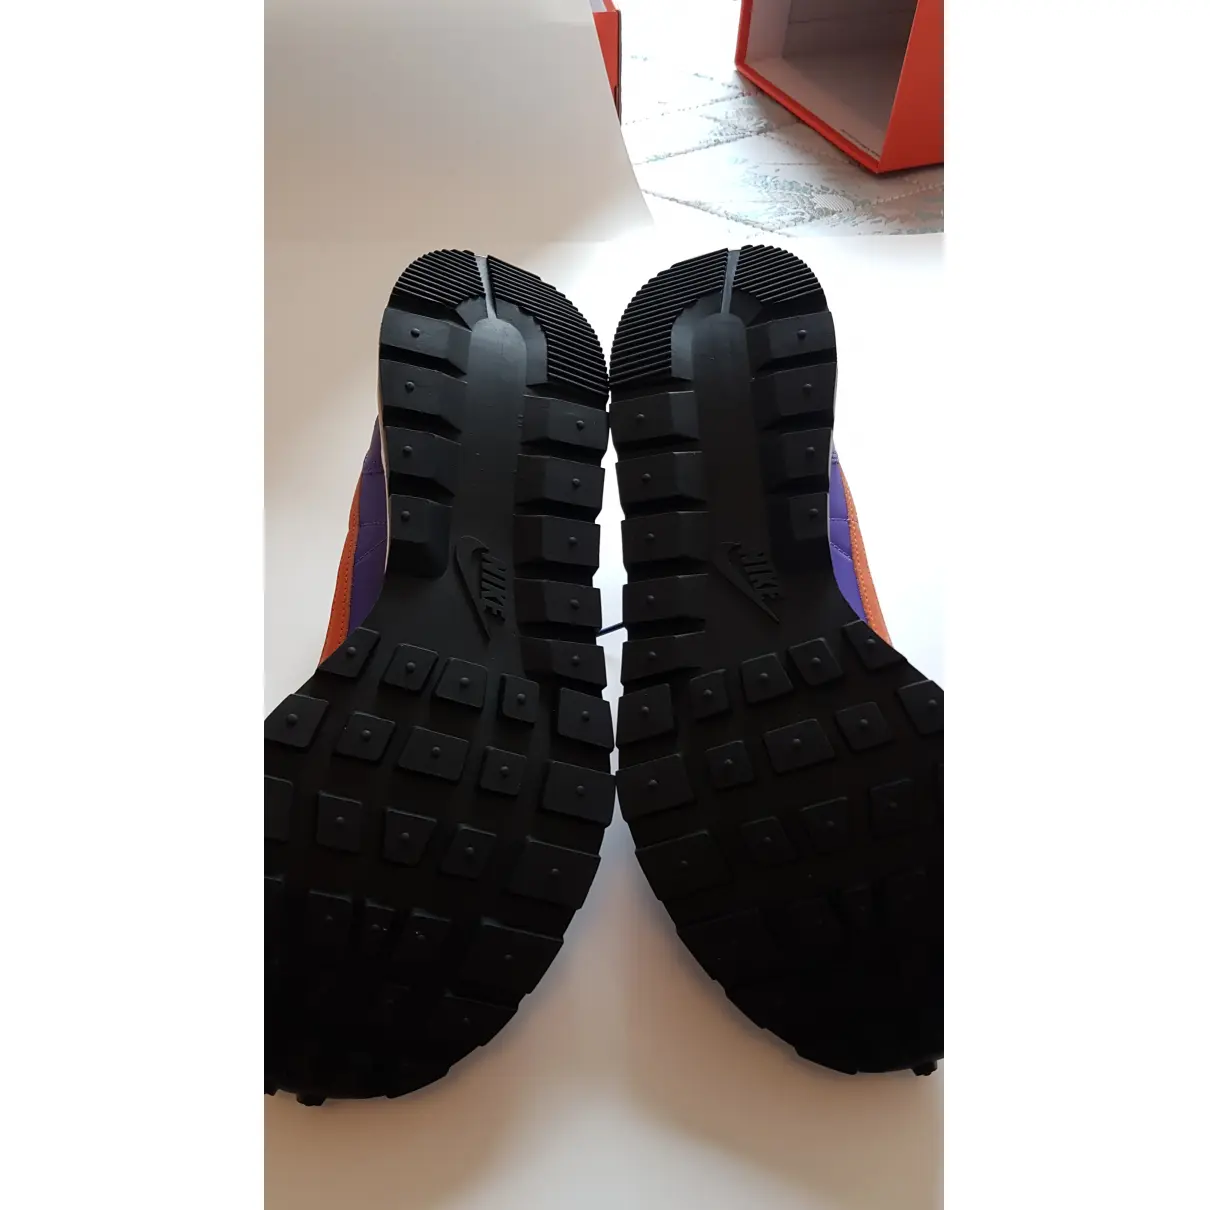 Vaporwaffle leather high trainers Nike x Sacaï